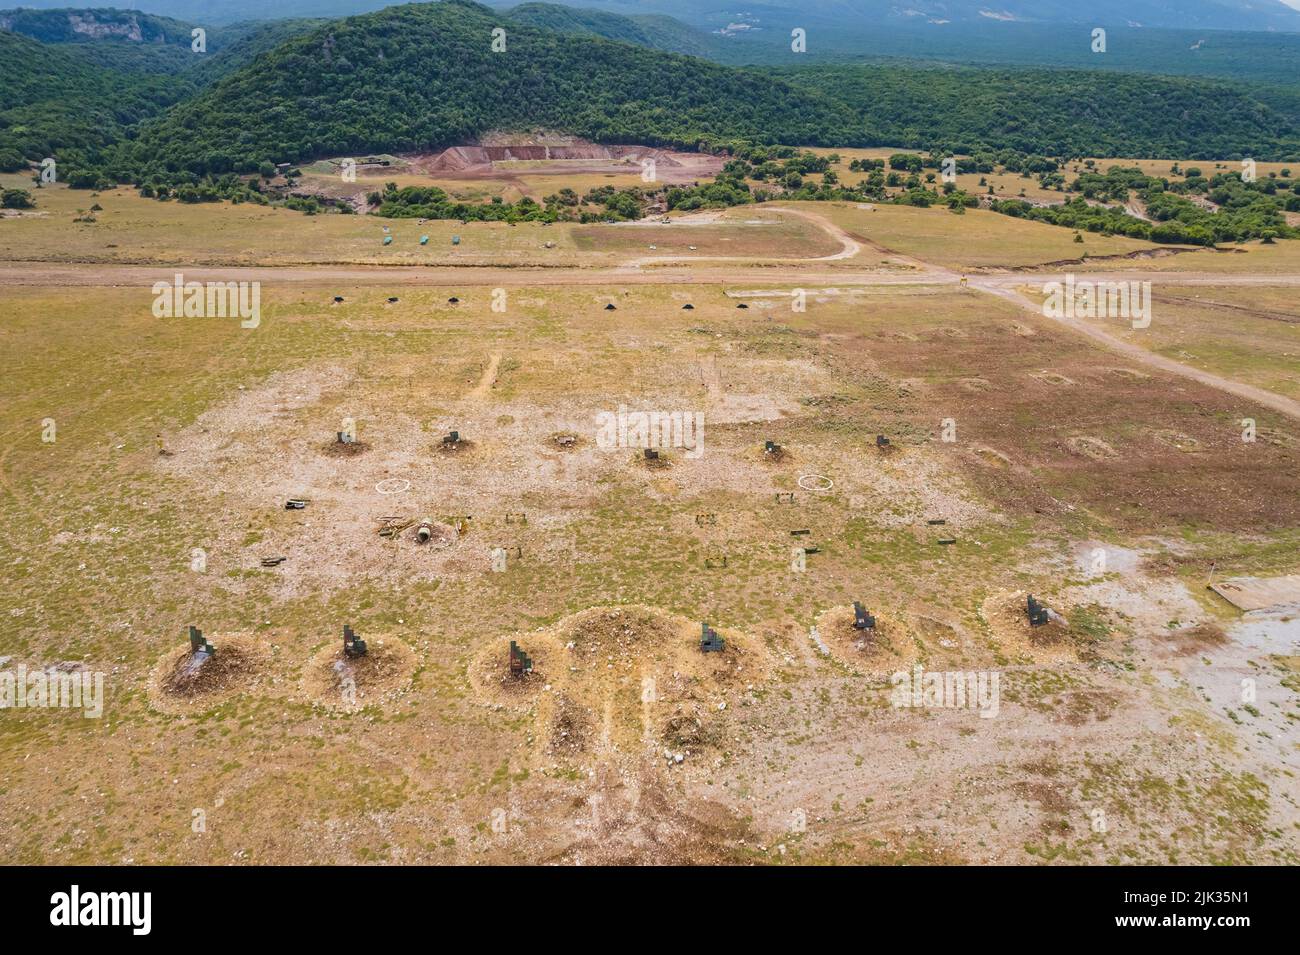 Tir de drone du site d'entraînement militaire et de l'aire de tir en Grèce. Photo de haute qualité Banque D'Images